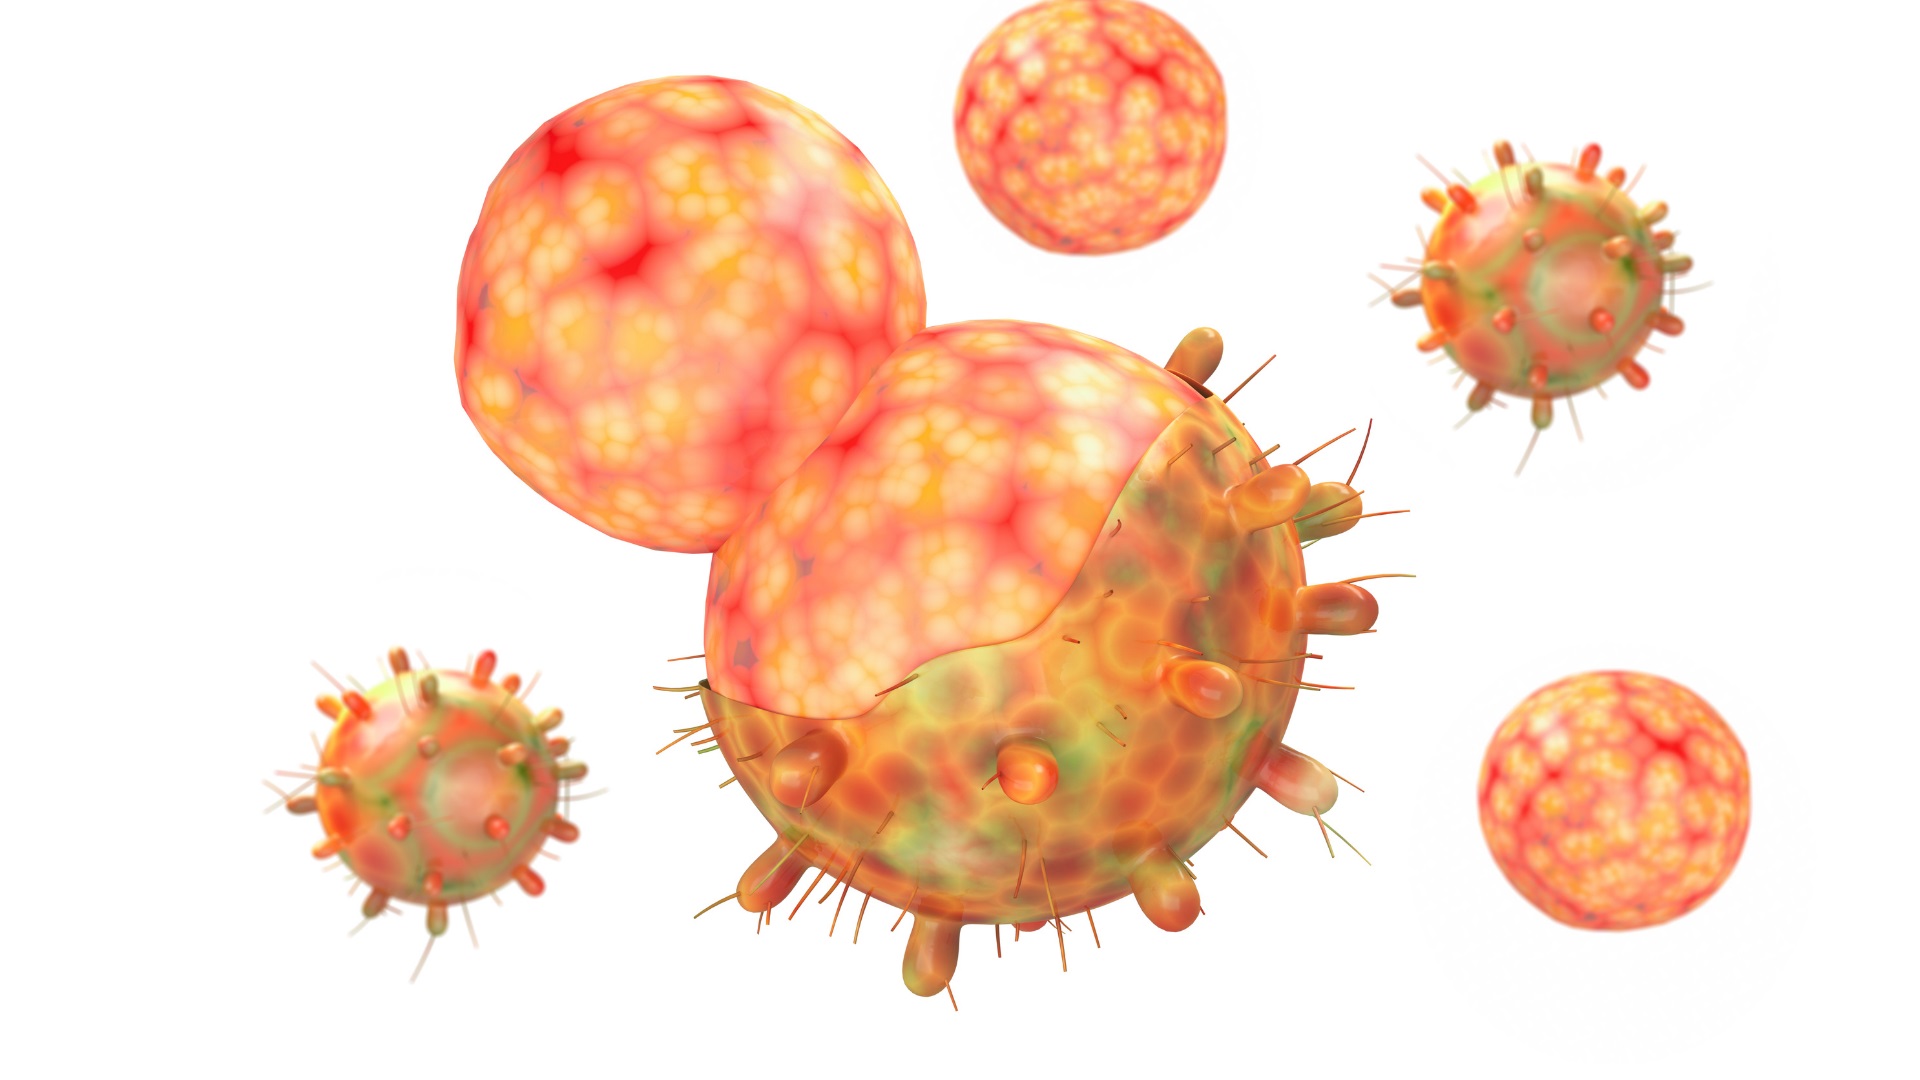 micron ha sido la variante ms contagiosa del coronavirus y otros virus respiratorios (Getty)